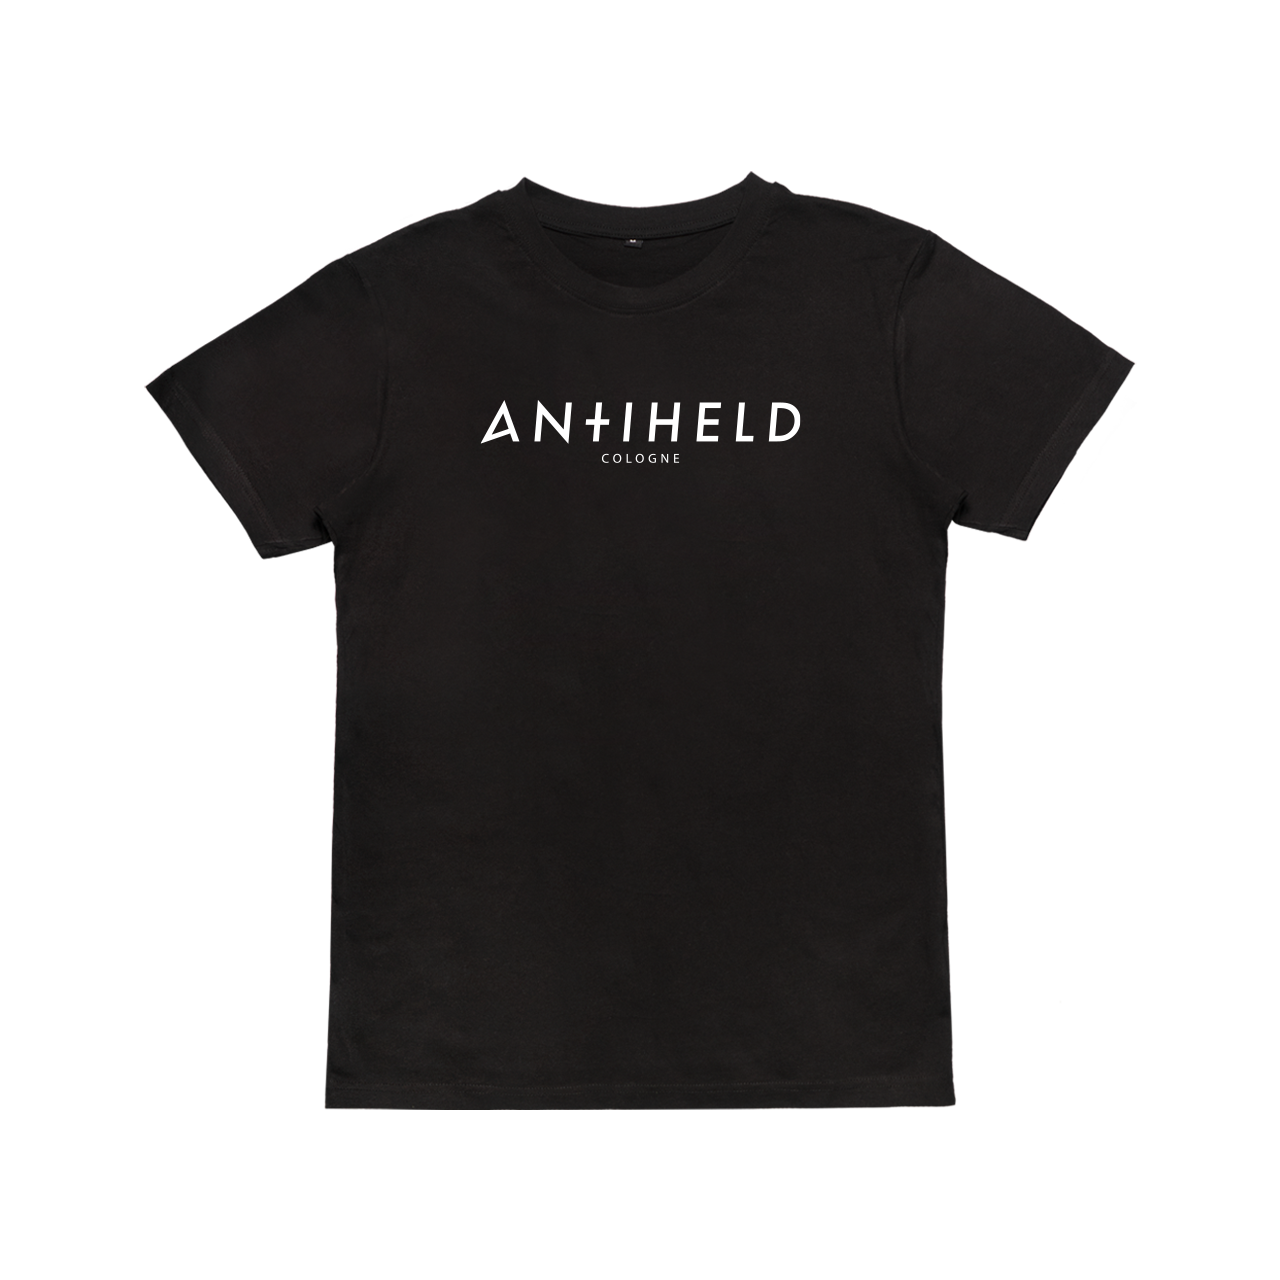 Antiheld - Basic Cologne Shirt